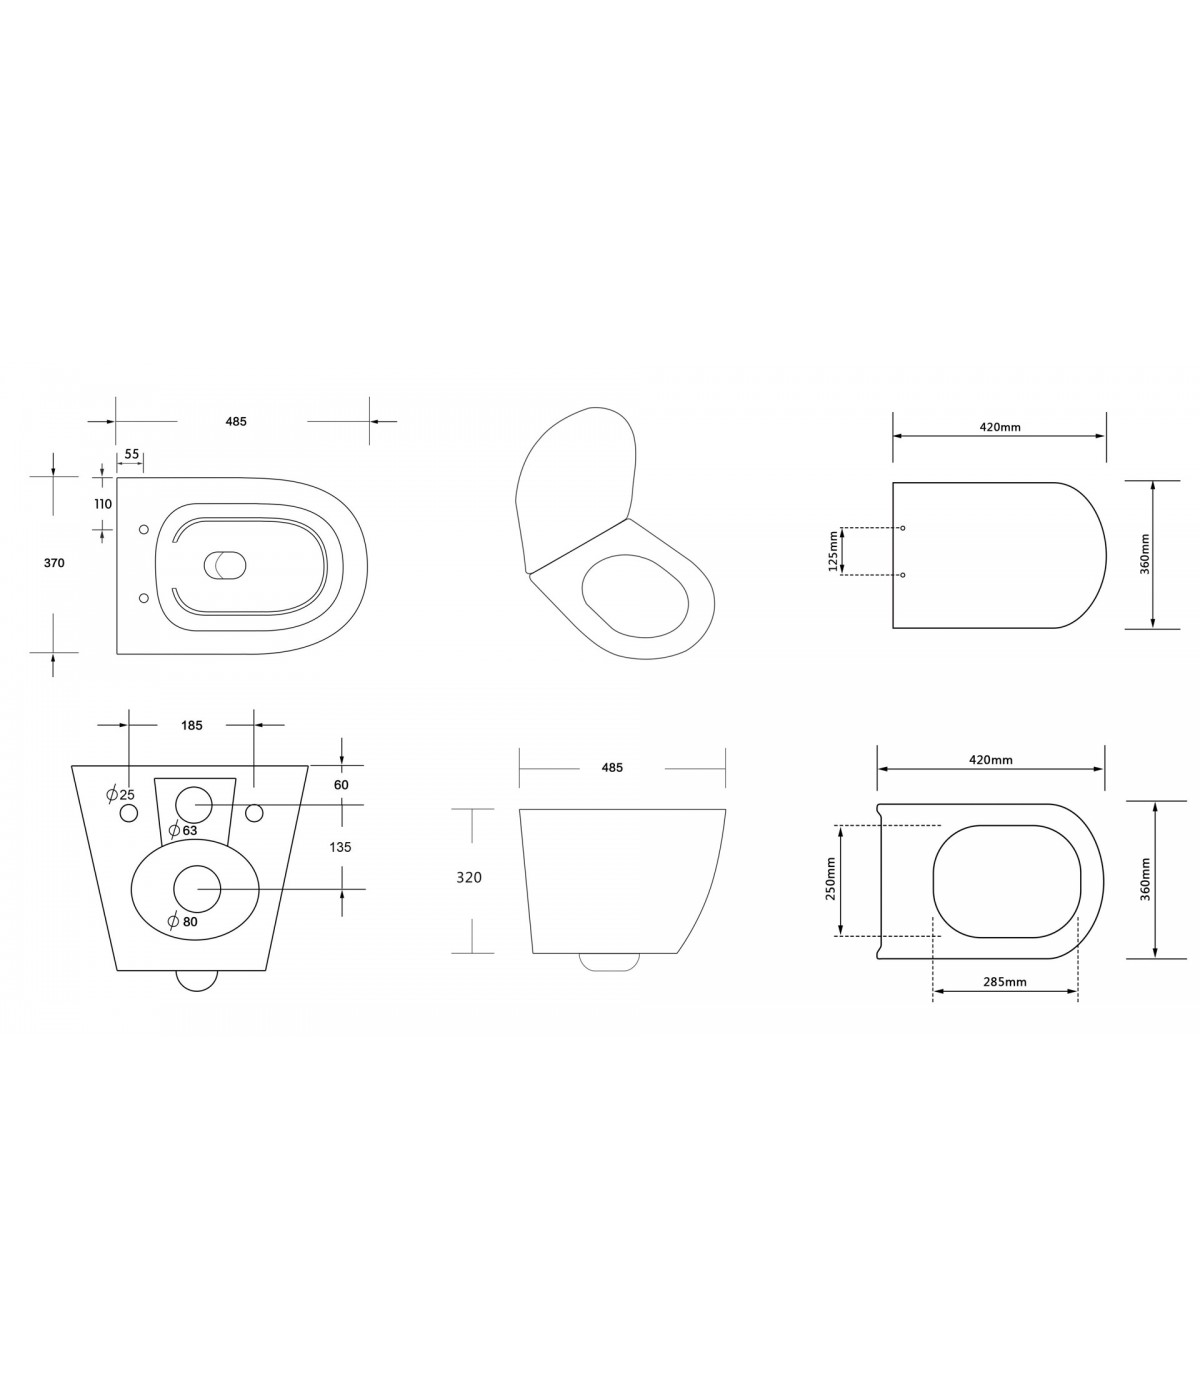 SET: WC-Vorwandelement Duofix + WC-Toilette SLIM Soft-Close Desna Weiß + Schallschutzmatte + WC-Betätigungsplatte Chrom